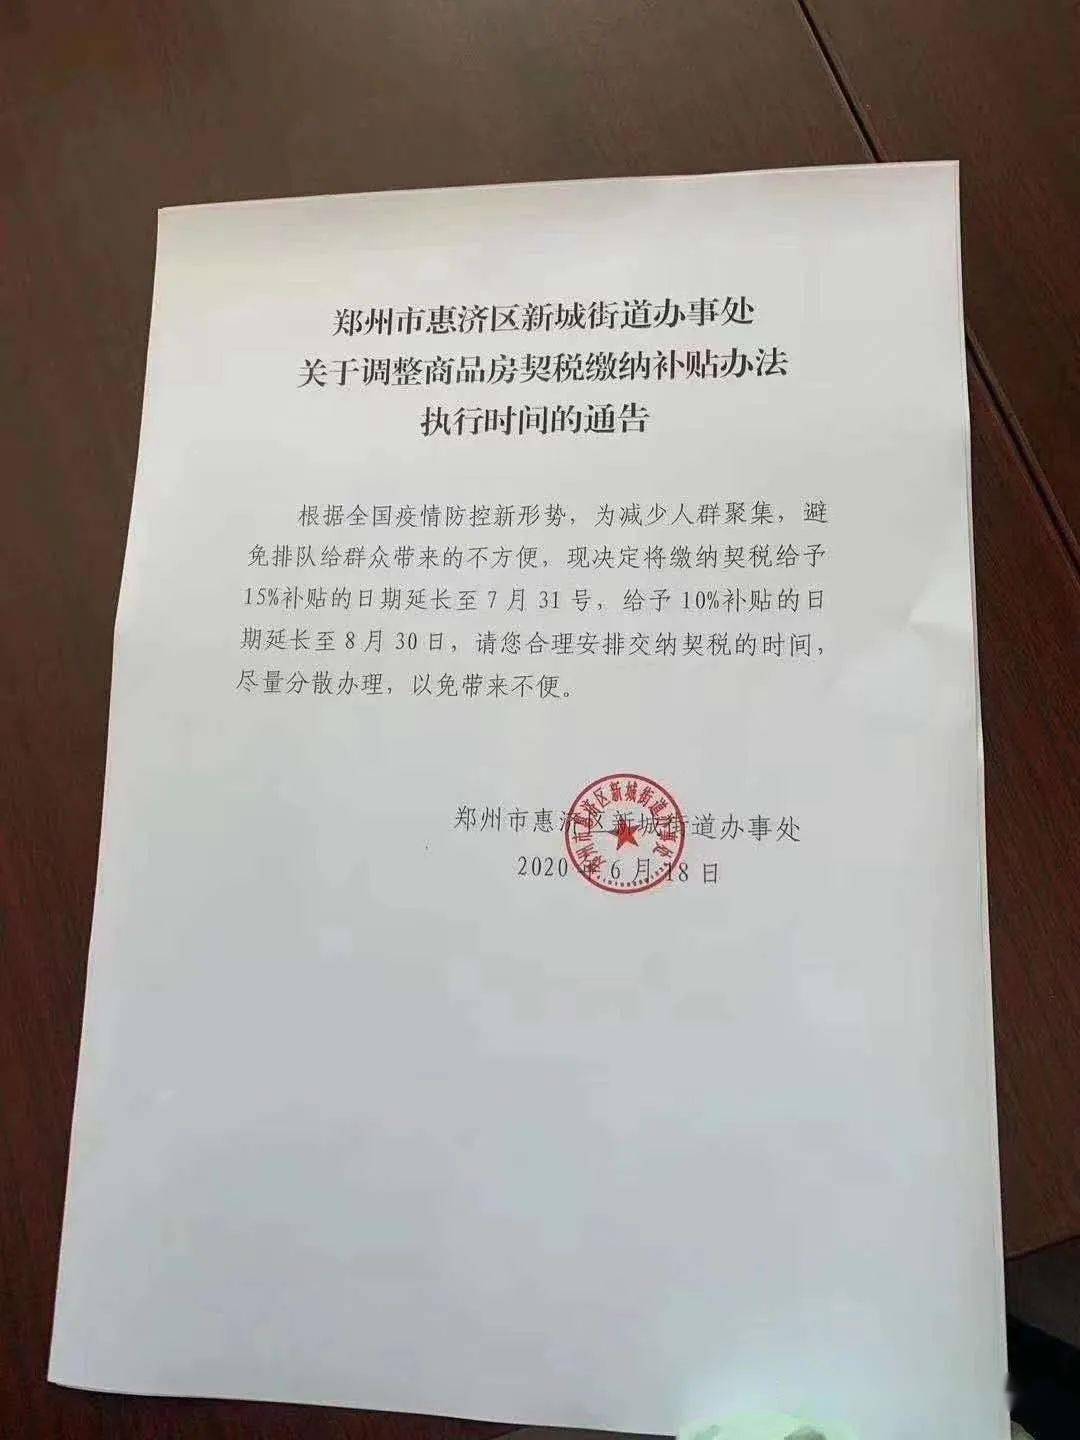 河南商报记者 周茜 6月18日,河南商报记者了解到,郑州市惠济区新城